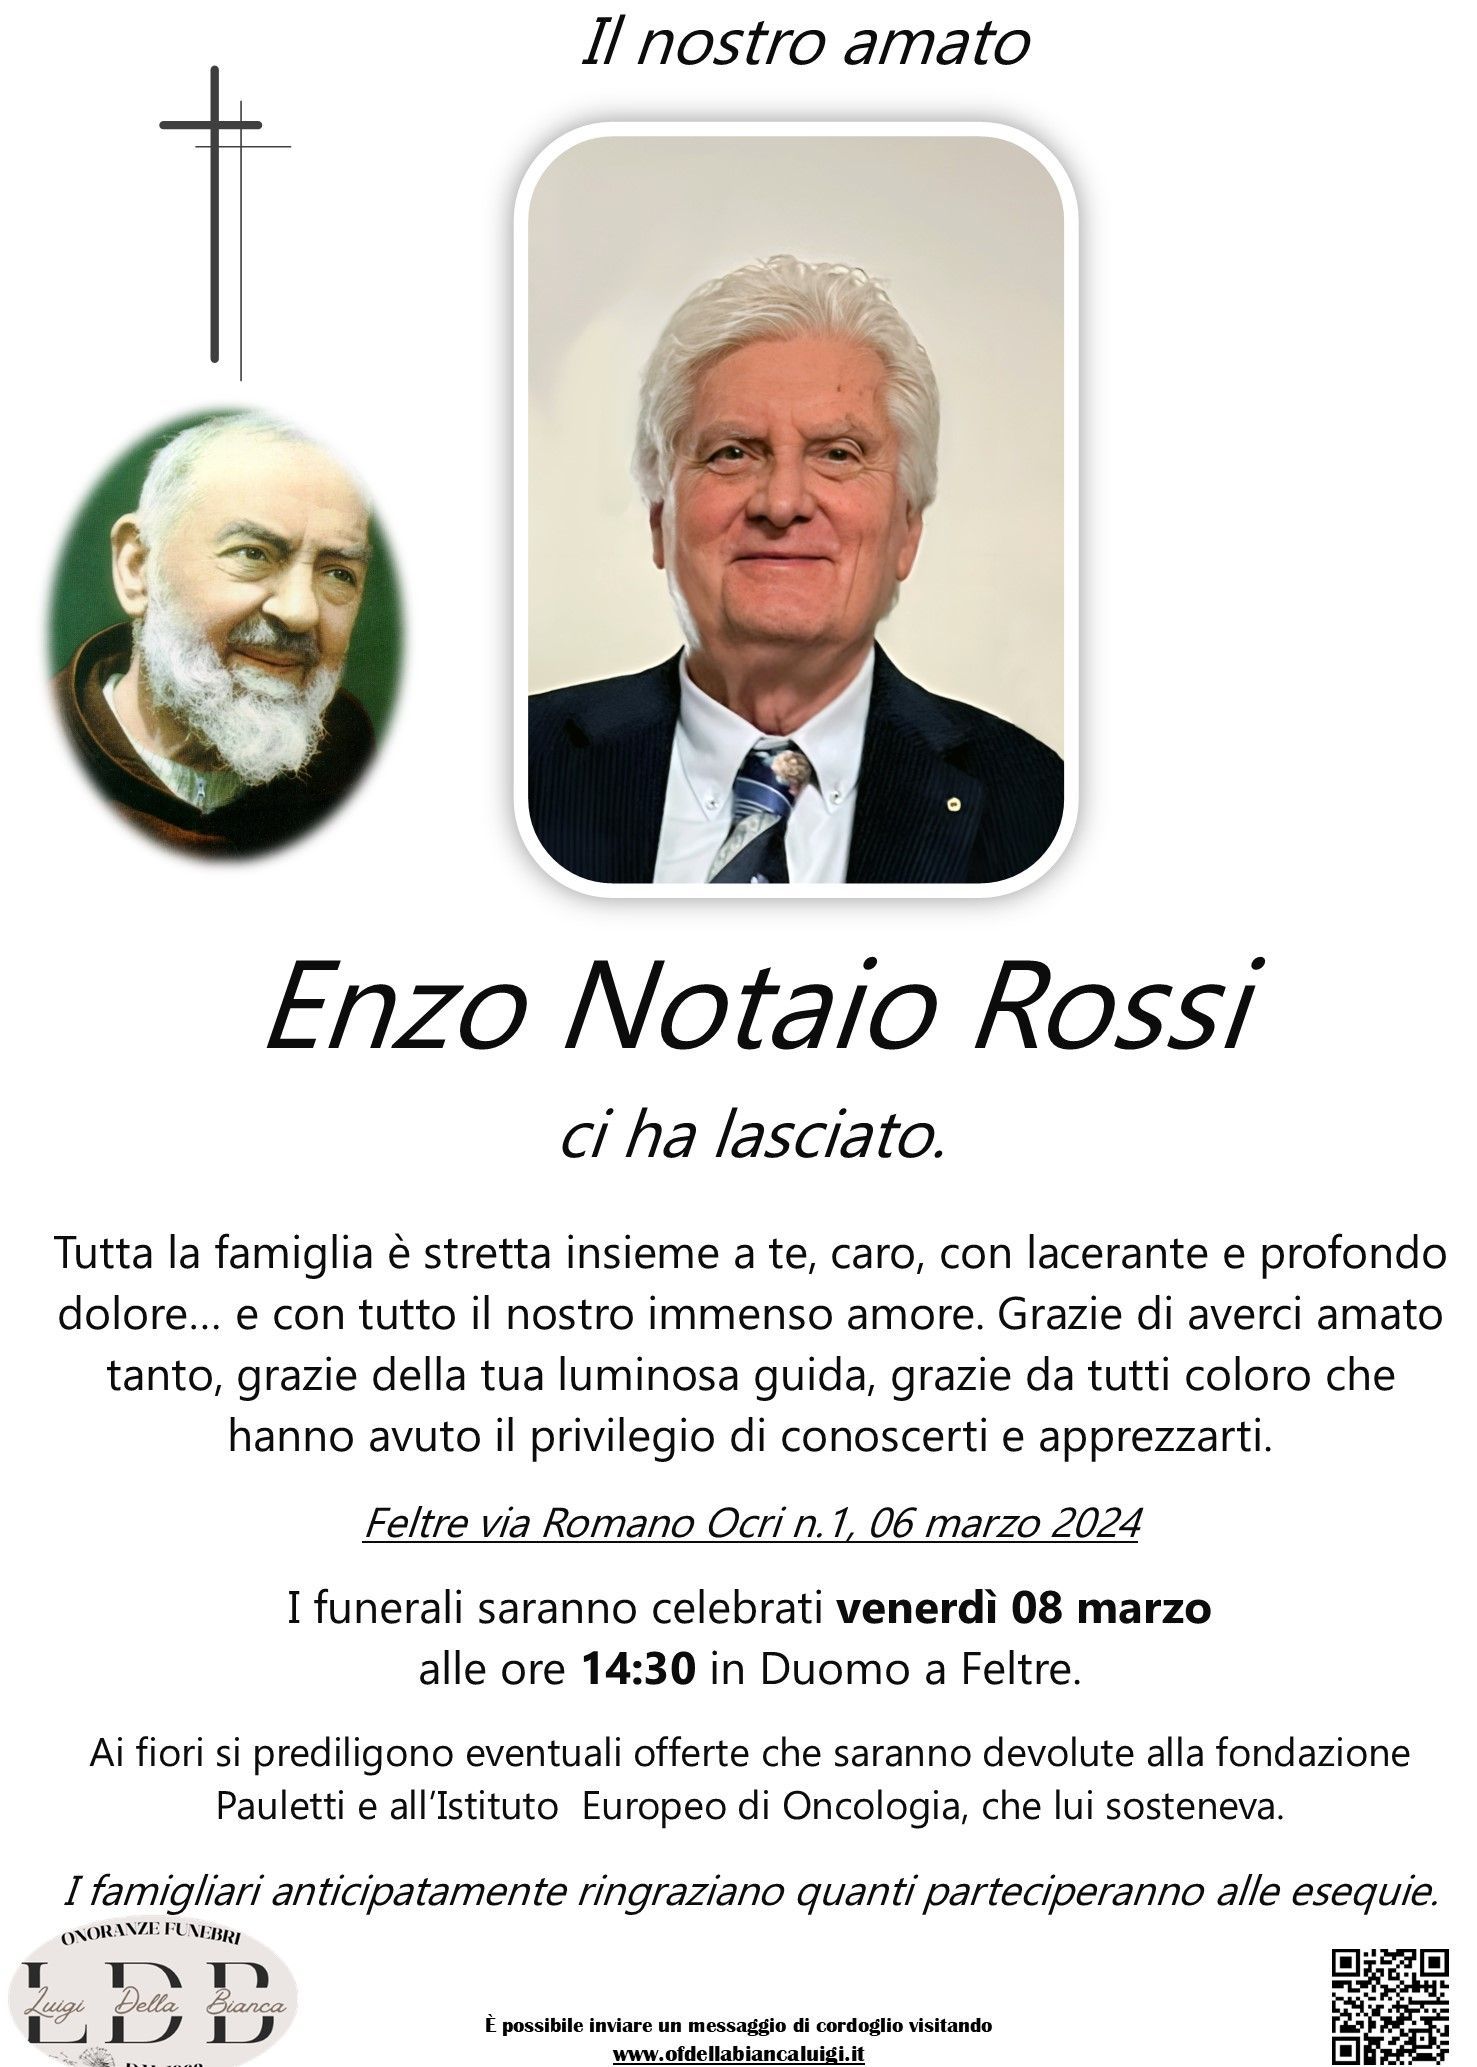 Enzo Notaio Rossi